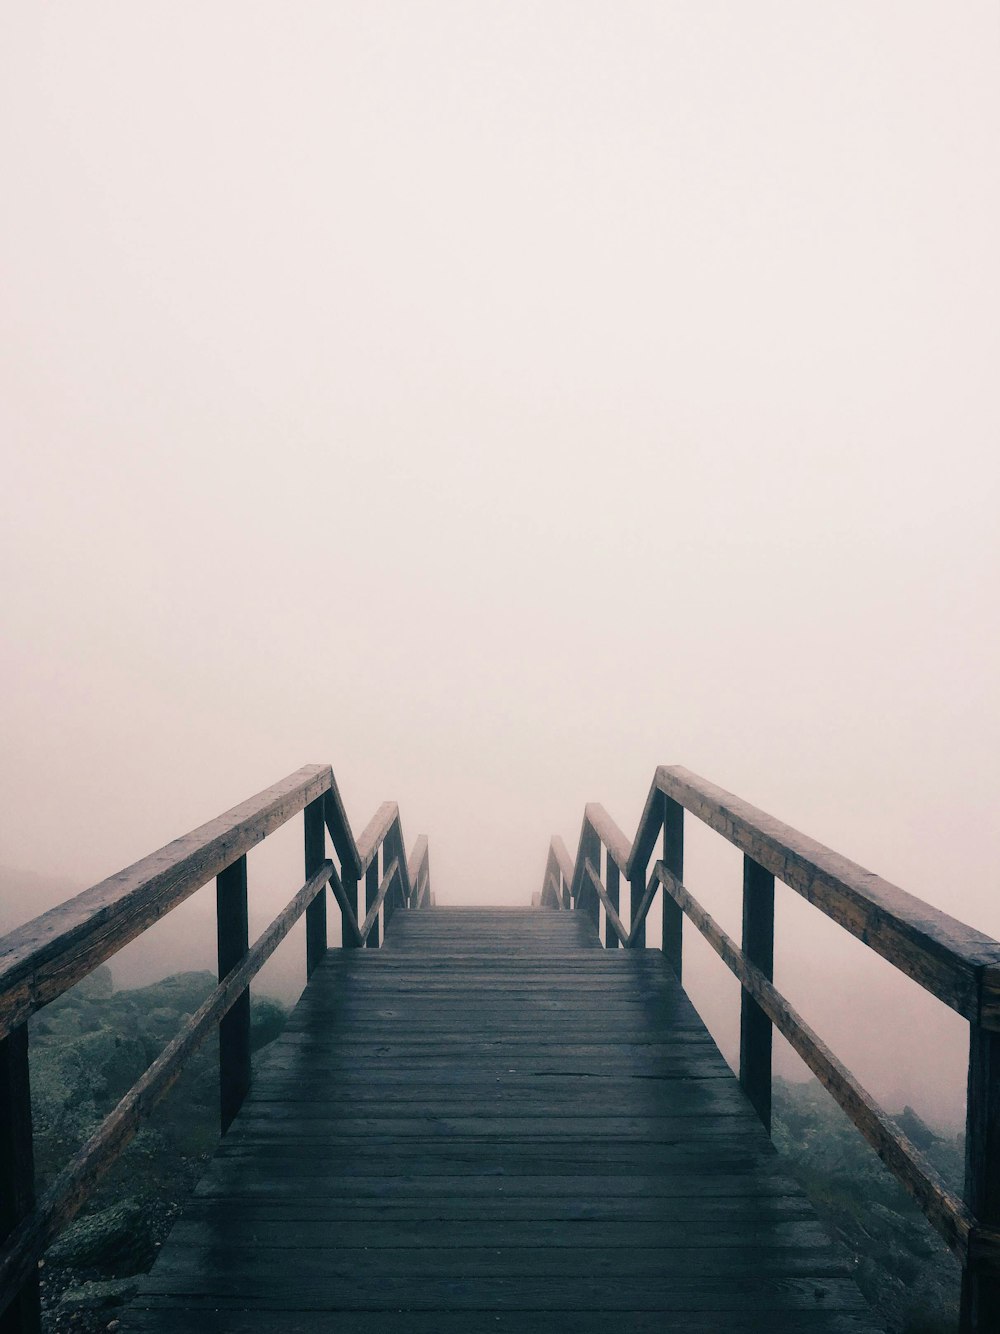 Escalera de madera negra cubierta de niebla